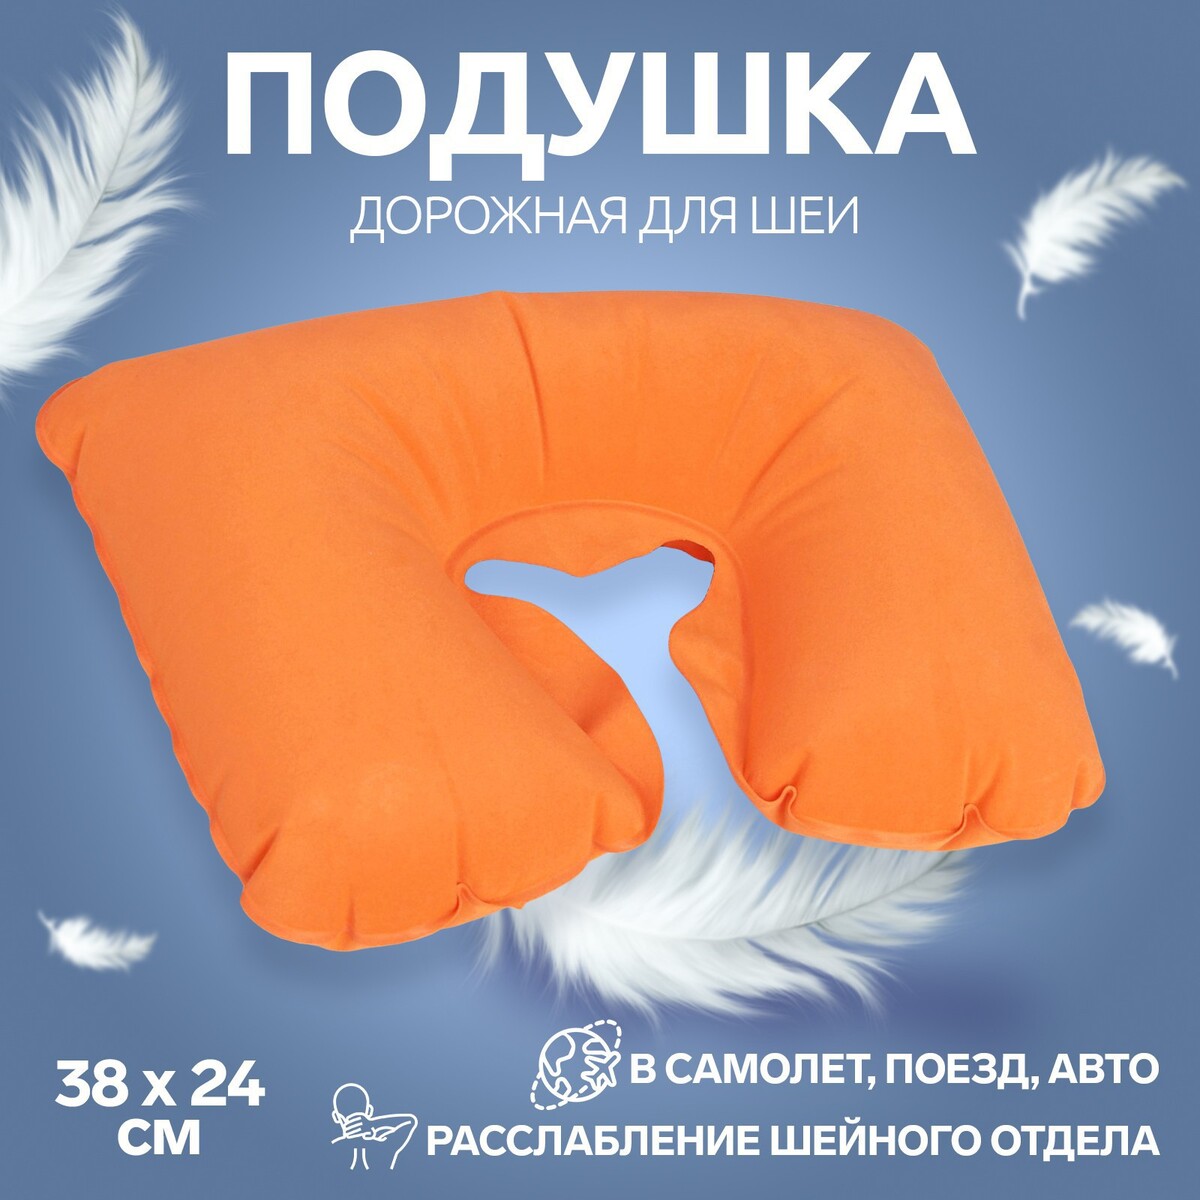 Подушка для шеи дорожная, надувная, 38 × 24 см, цвет оранжевый надувная подушка acecamp синий